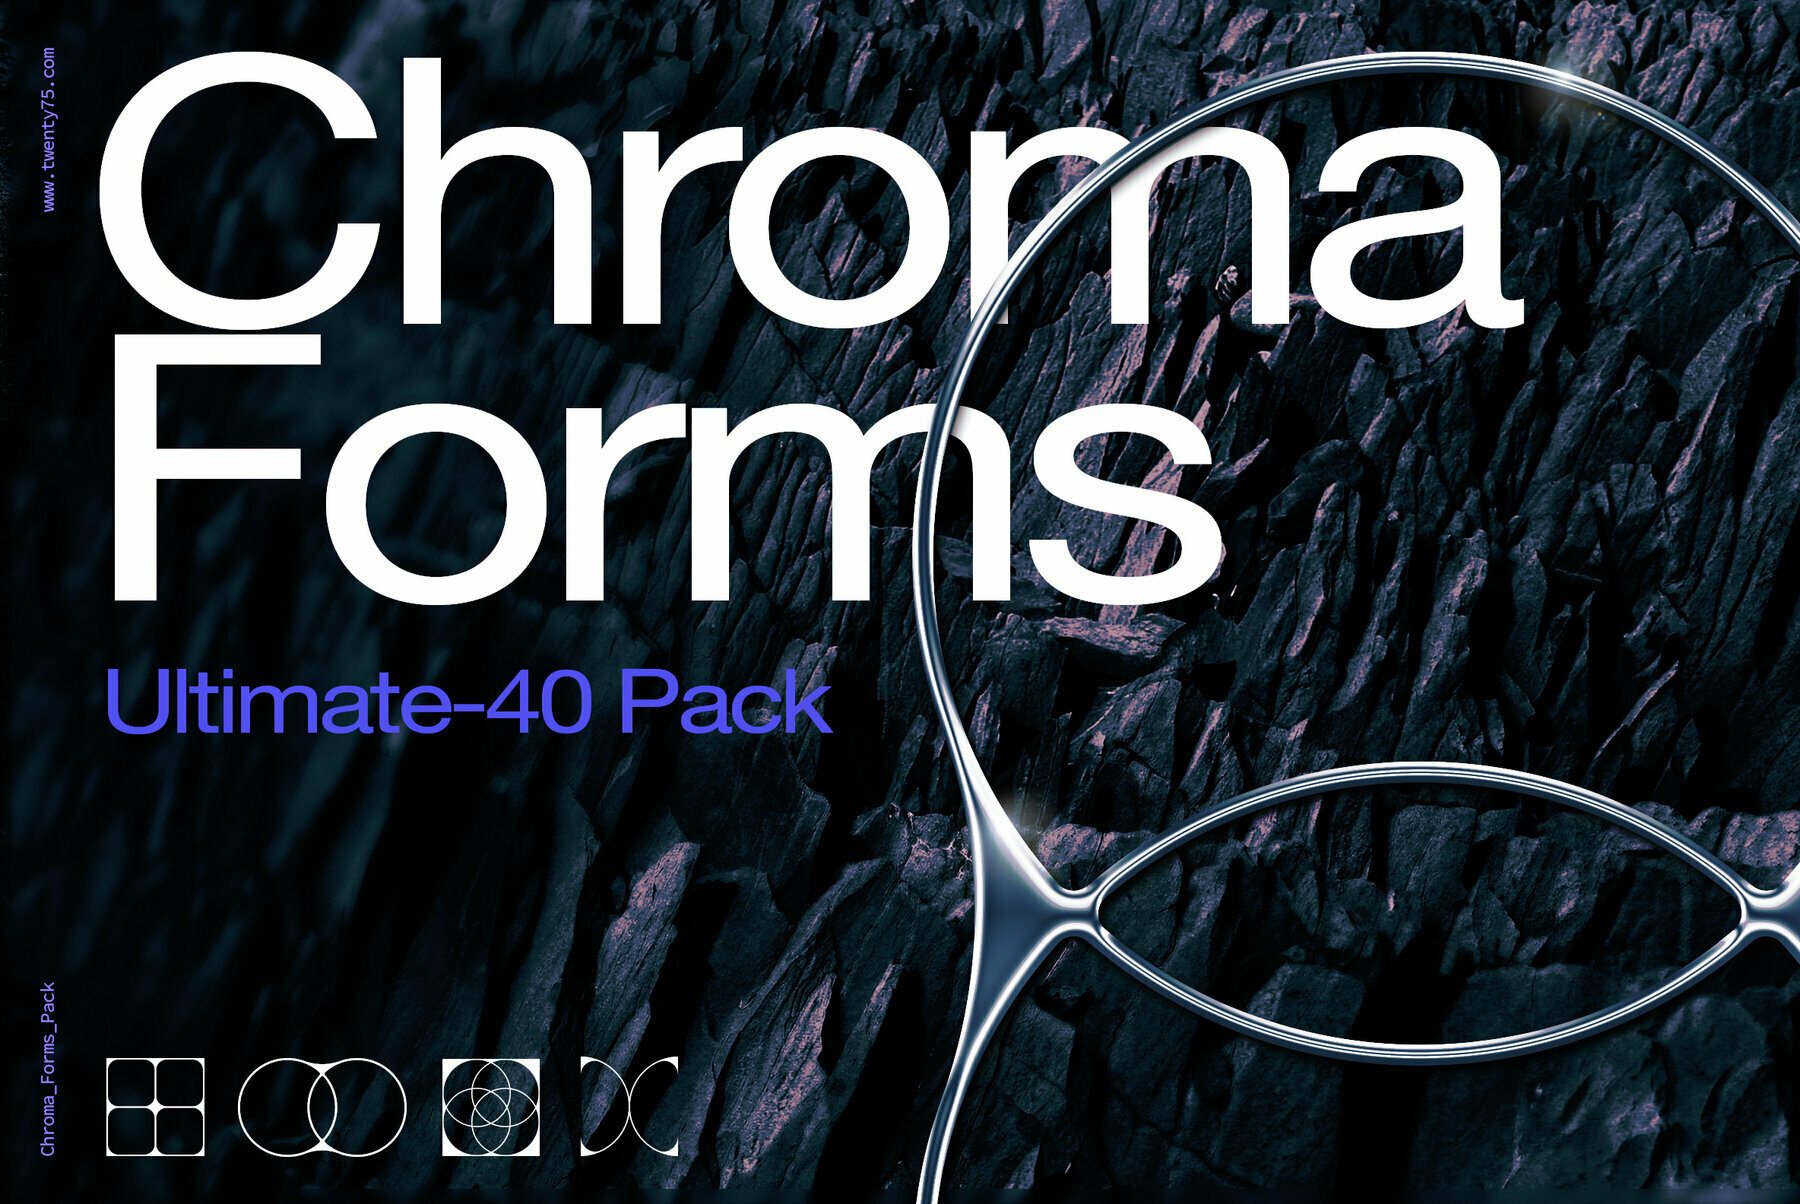 120个新未来主义抽象艺术酸性镀铬形状3D色彩效果包 Chroma Forms Ultimate 40 Pack（5147）